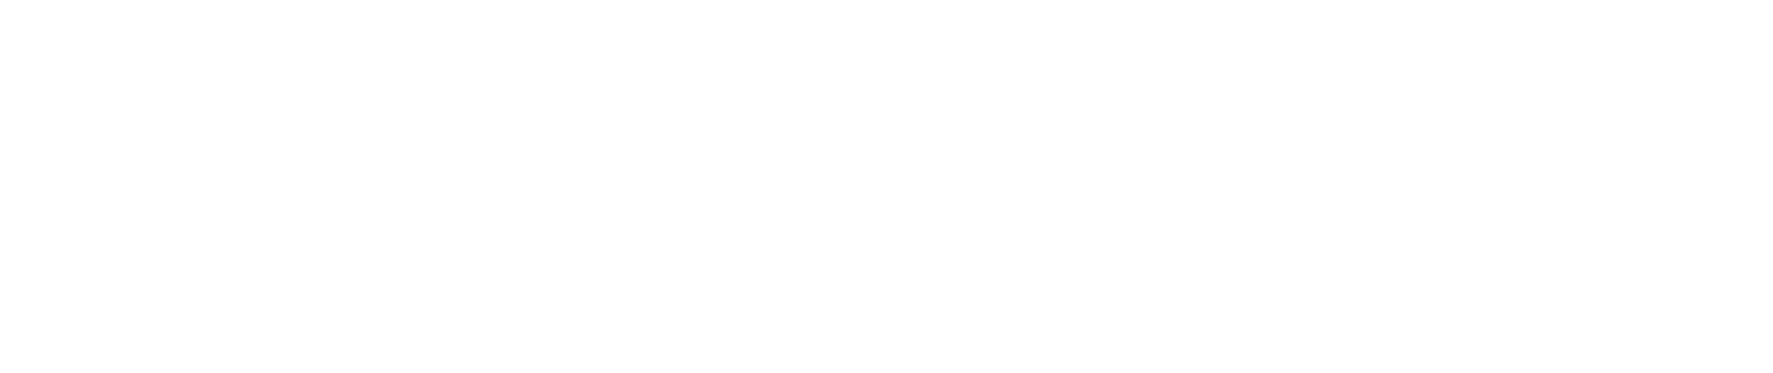 beecher-walker-logo-invet